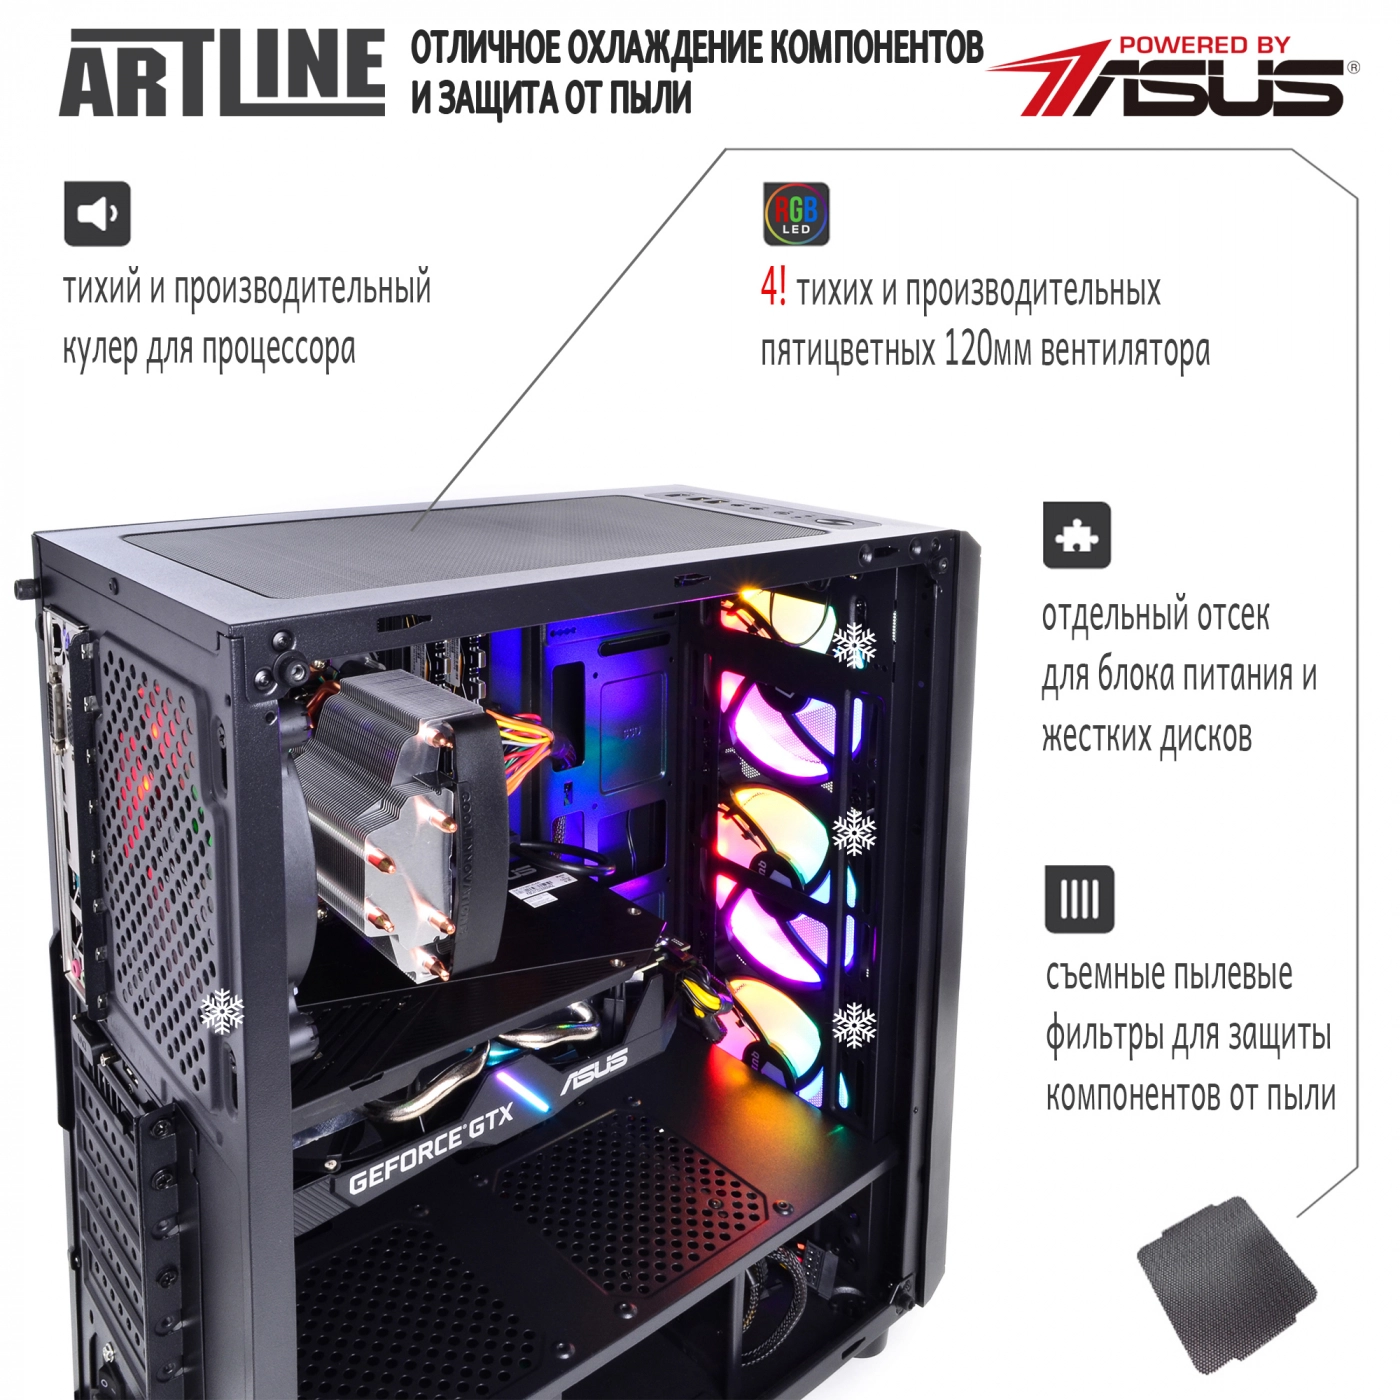 Купить Компьютер ARTLINE Gaming X35v31 - фото 3